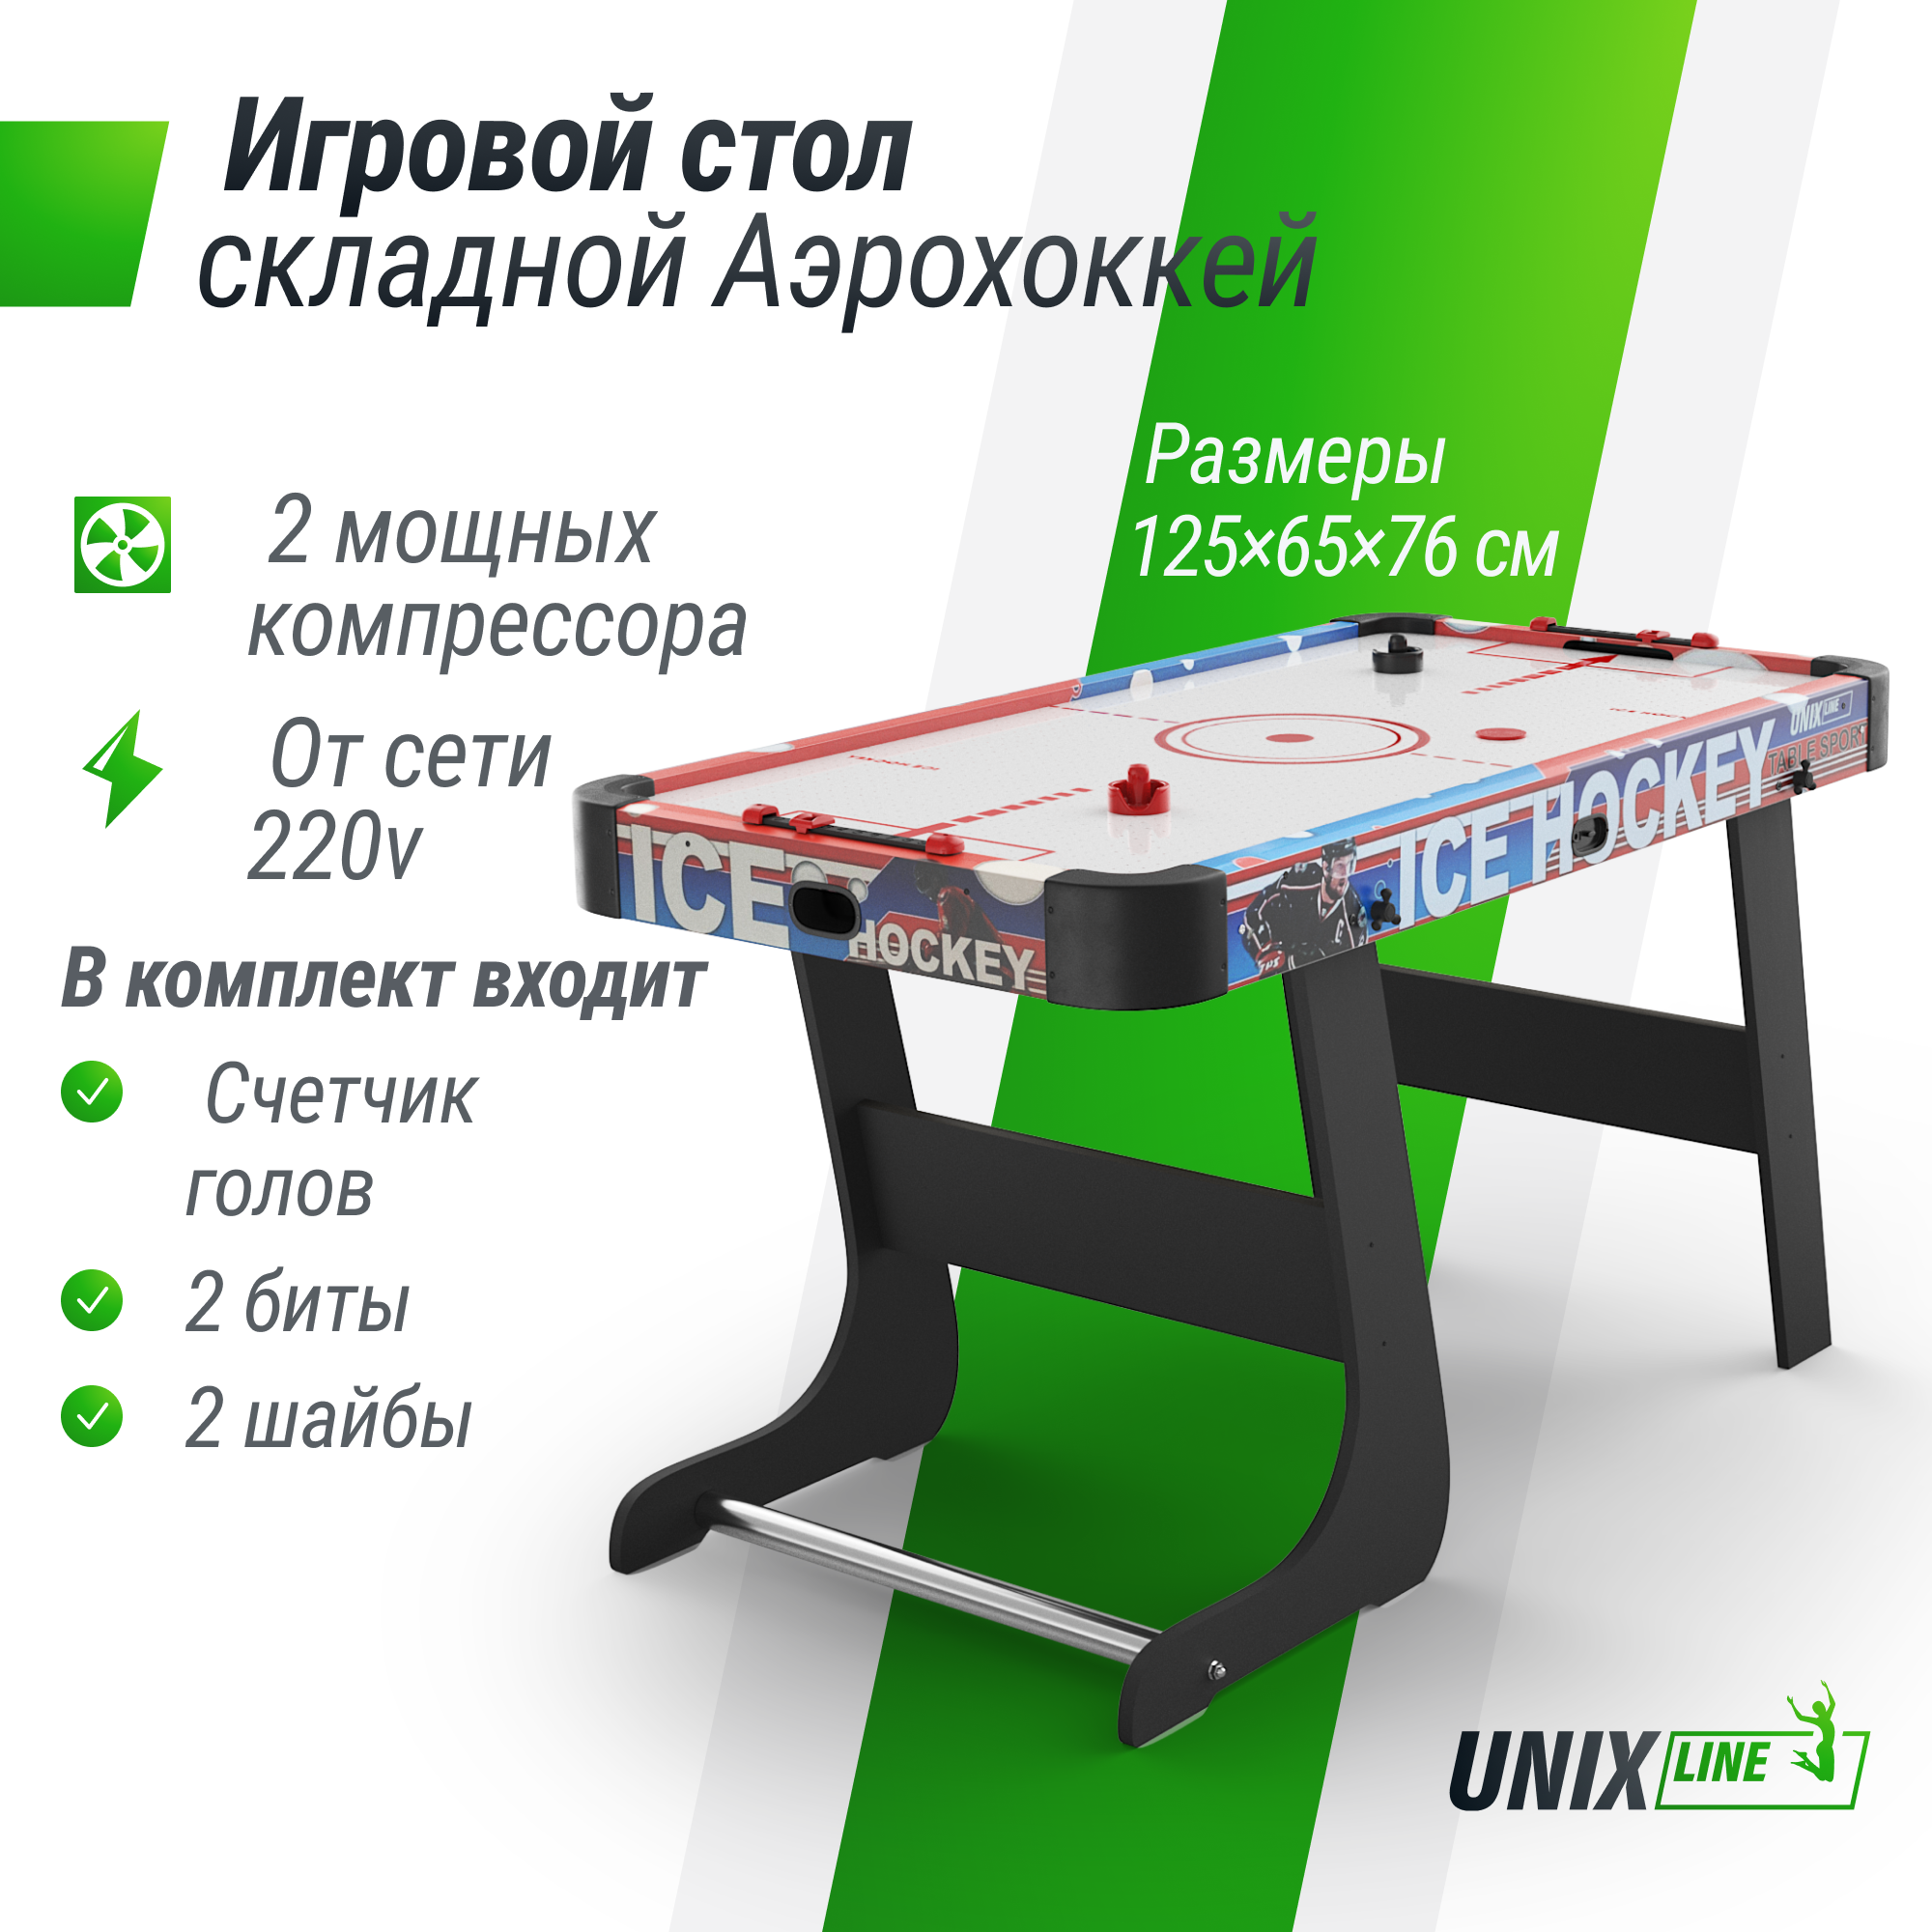 Игровой стол складной UNIX Line Аэрохоккей 125х65 cм, большой напольный, от сети 220 В солнцезащитный тент unix line 488 см 16 ft trsunt16